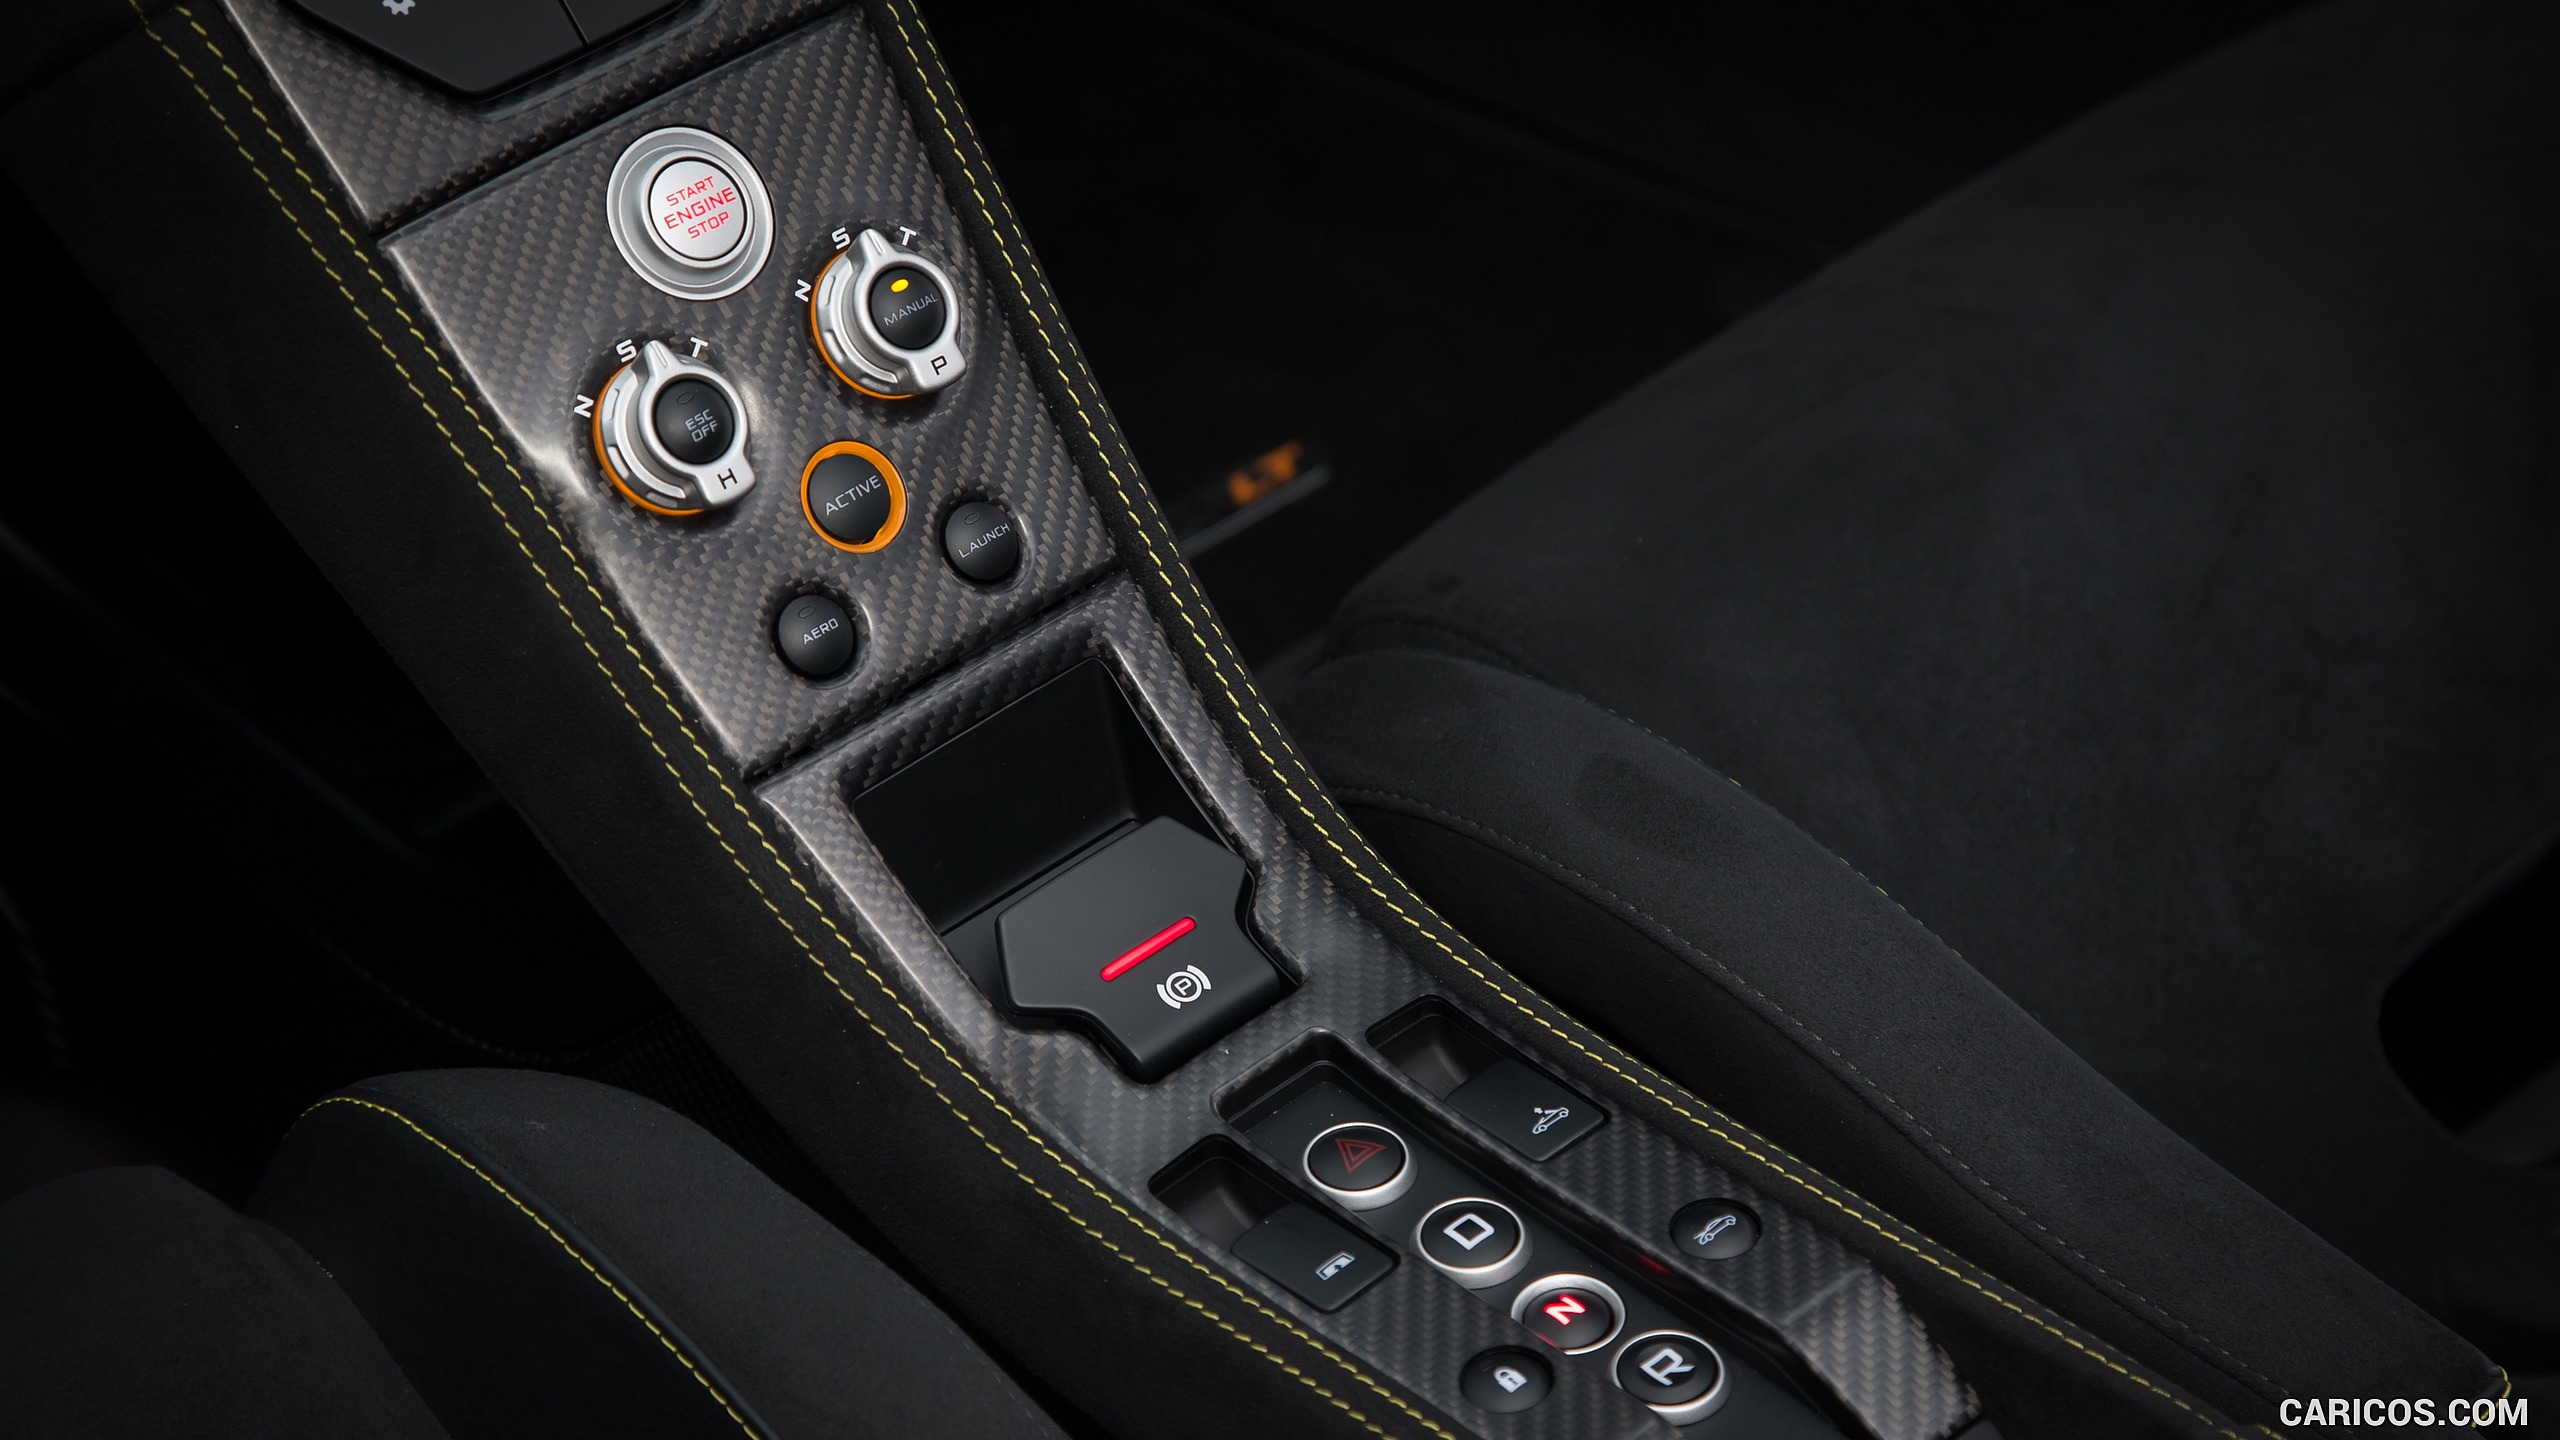 2017 McLaren 675LT Spider - Interior, Controls, #58 of 60